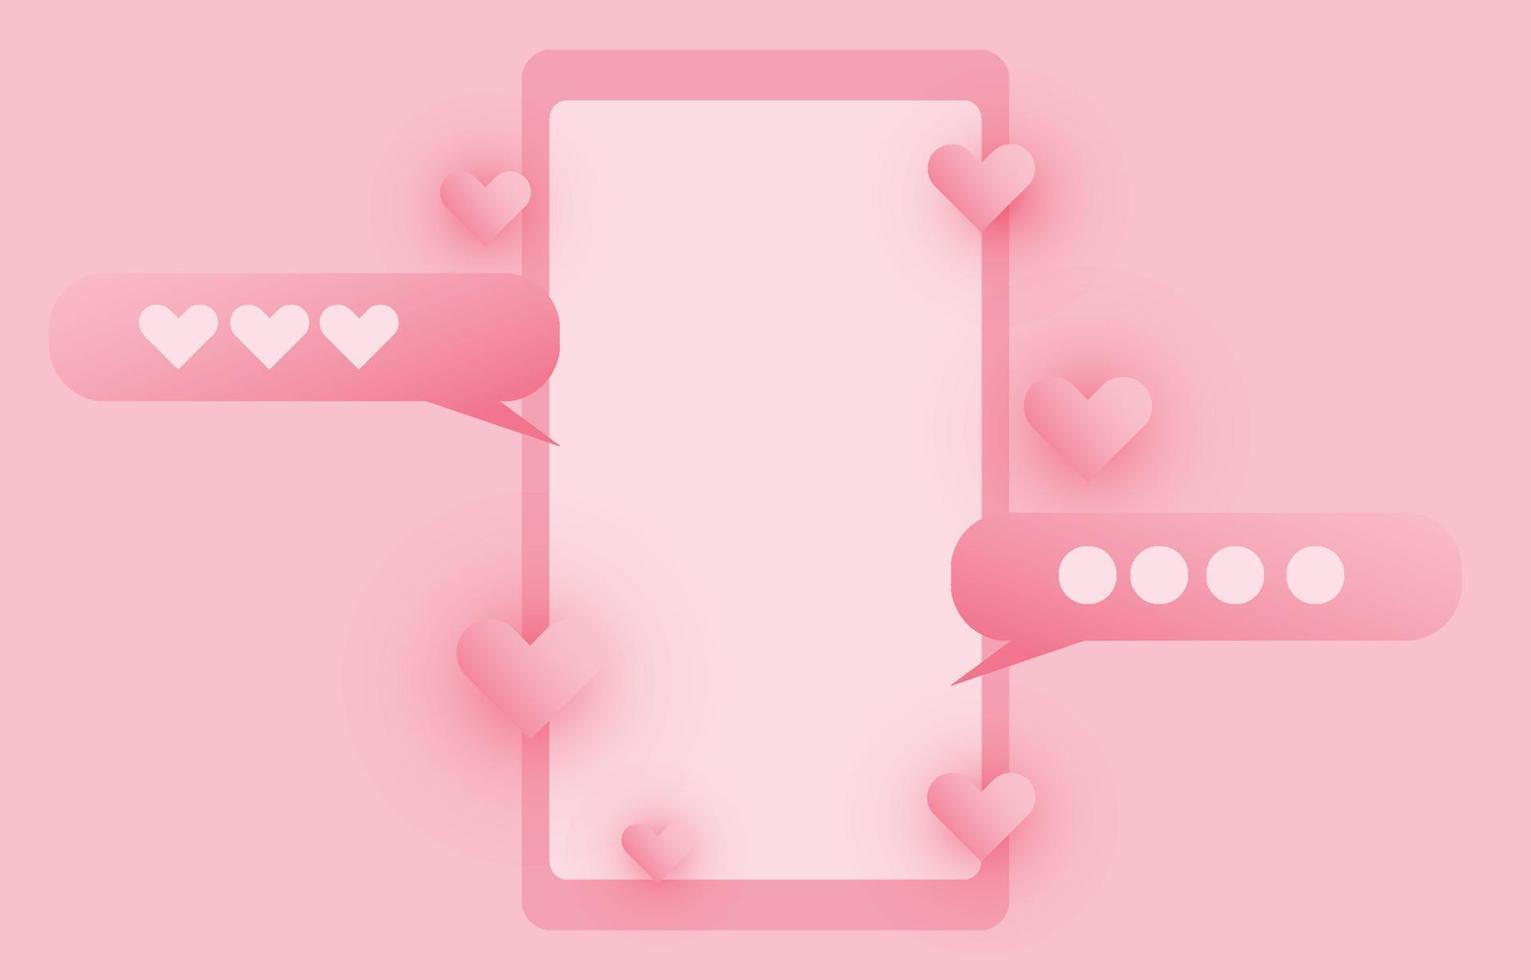 cadre photo de médias sociaux, avec bouton d'amour de coeur 3d découpé en papier et envoi de messages pour couple, chat de concept pour la Saint-Valentin, illustration vectorielle vecteur